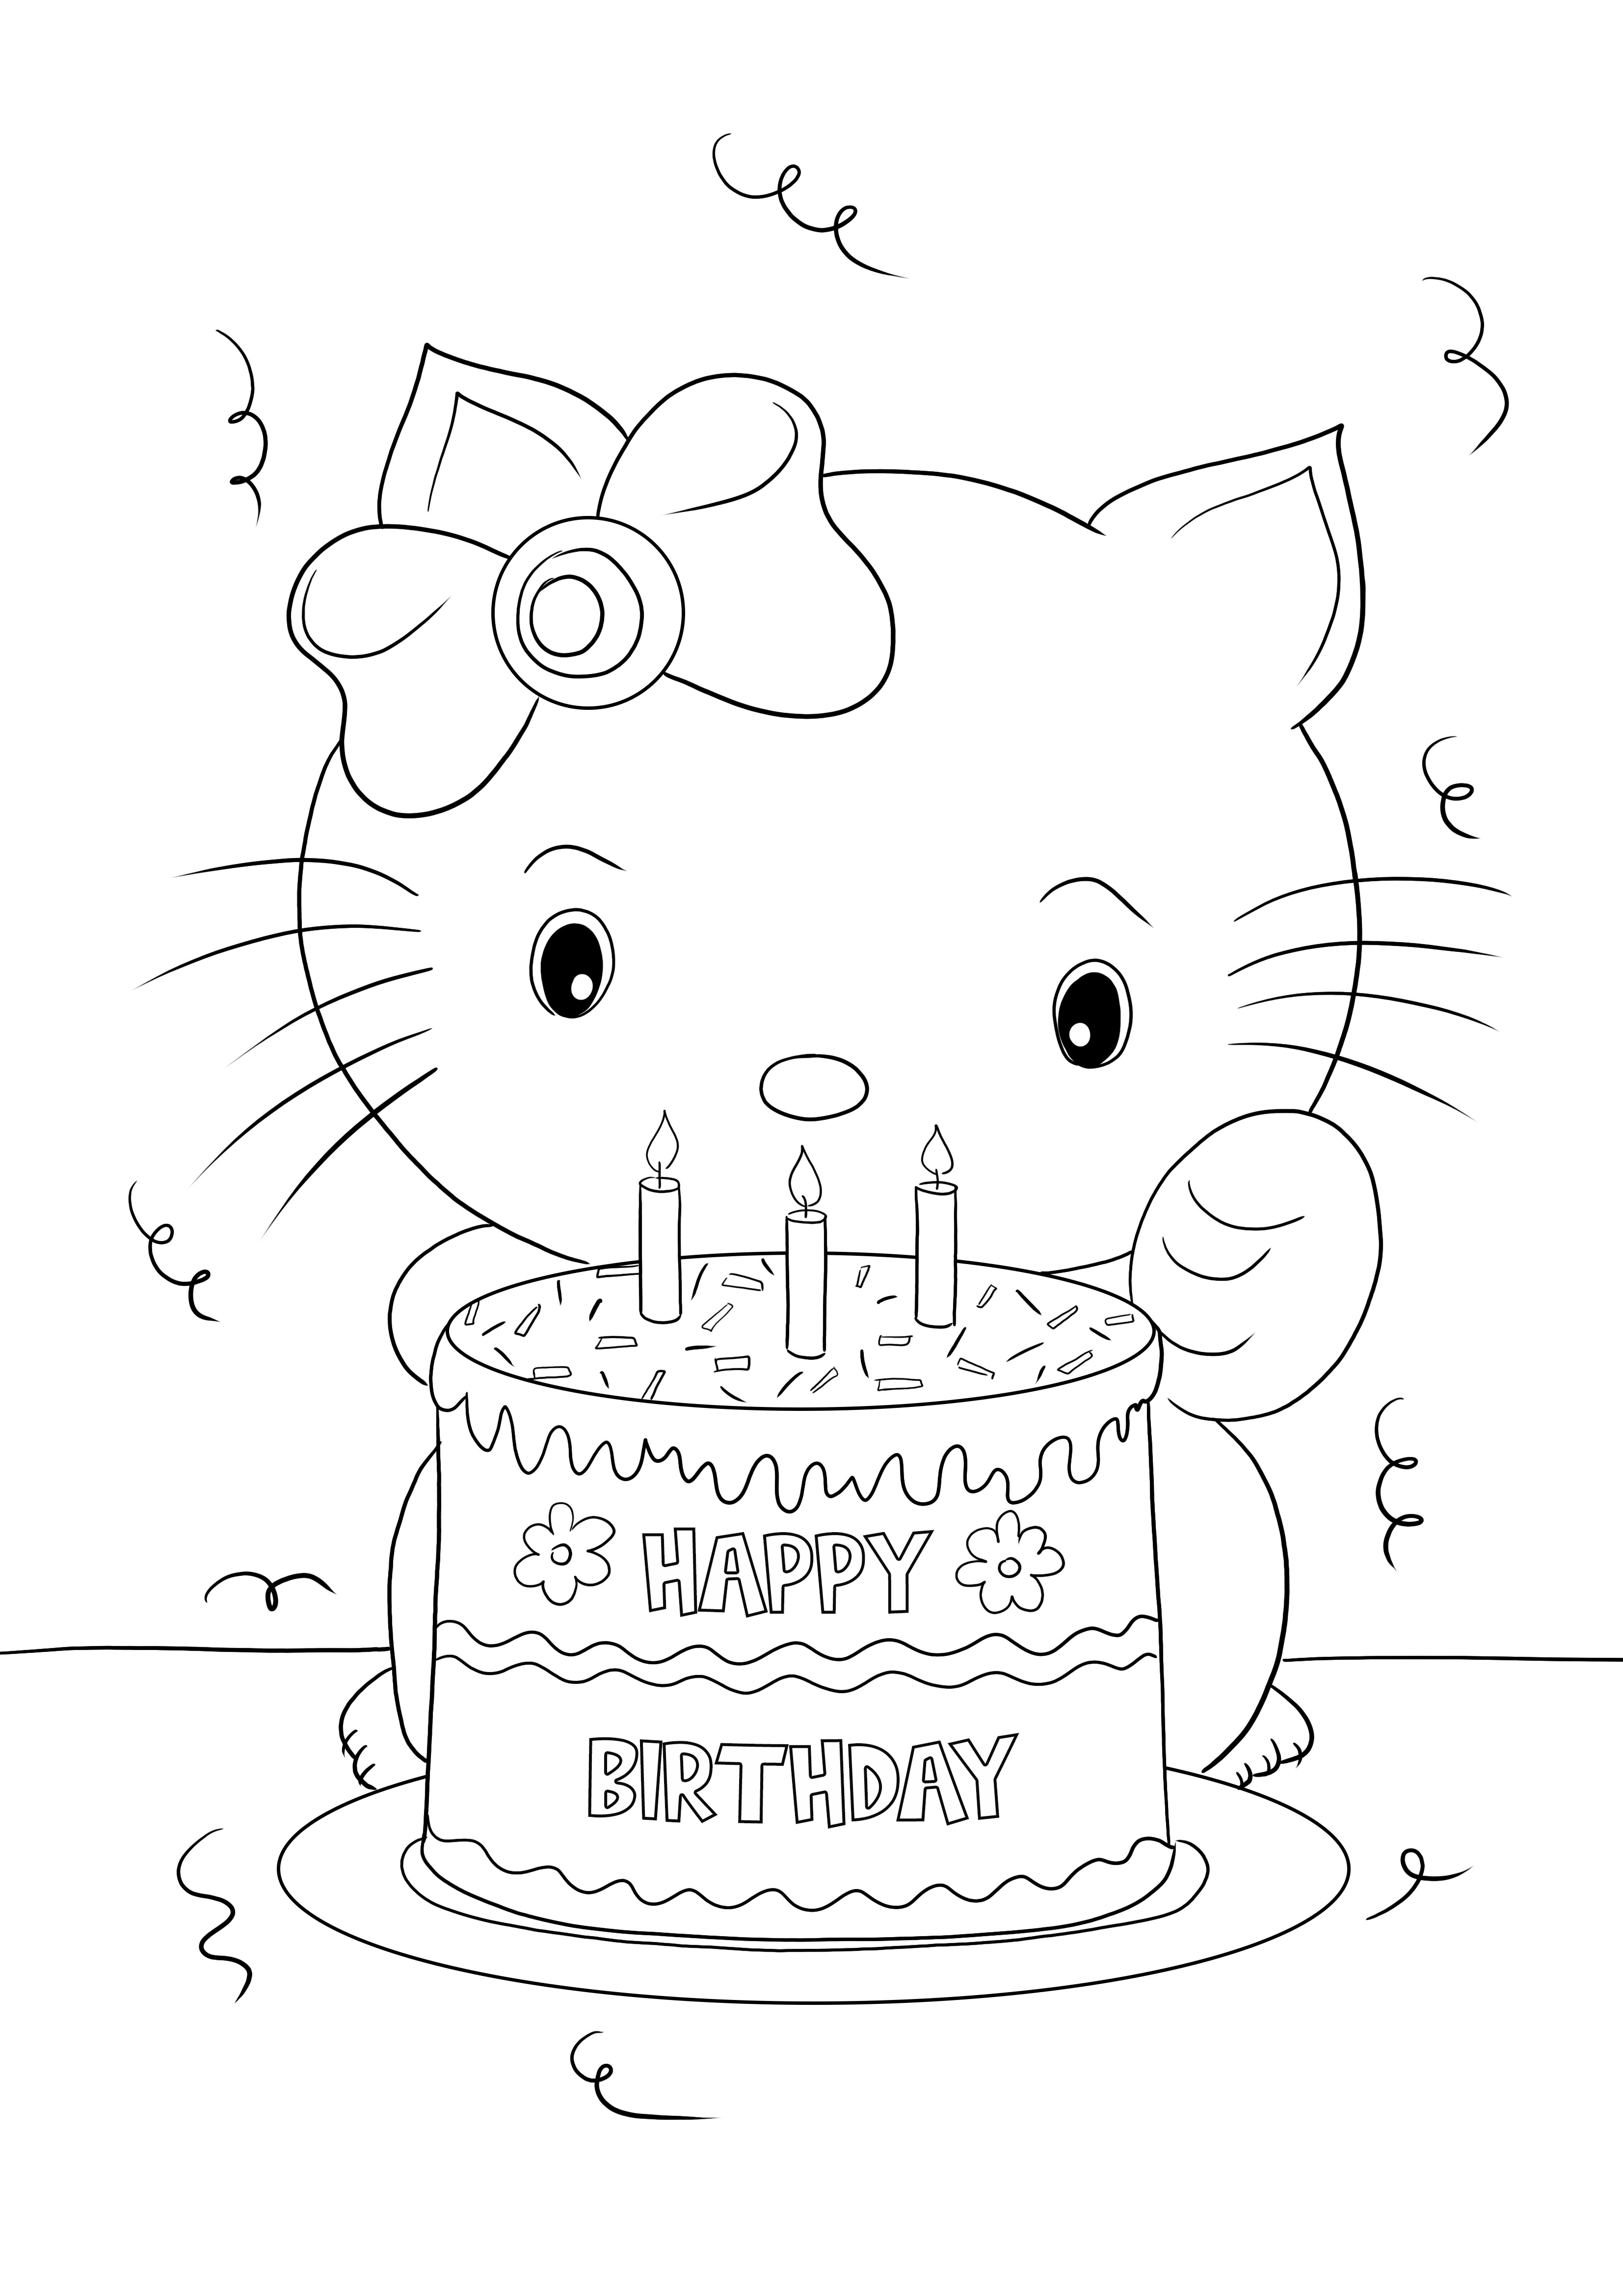 Imprimible gratis de Feliz Cumpleaños Hello Kitty para colorear y aprender divirtiéndose